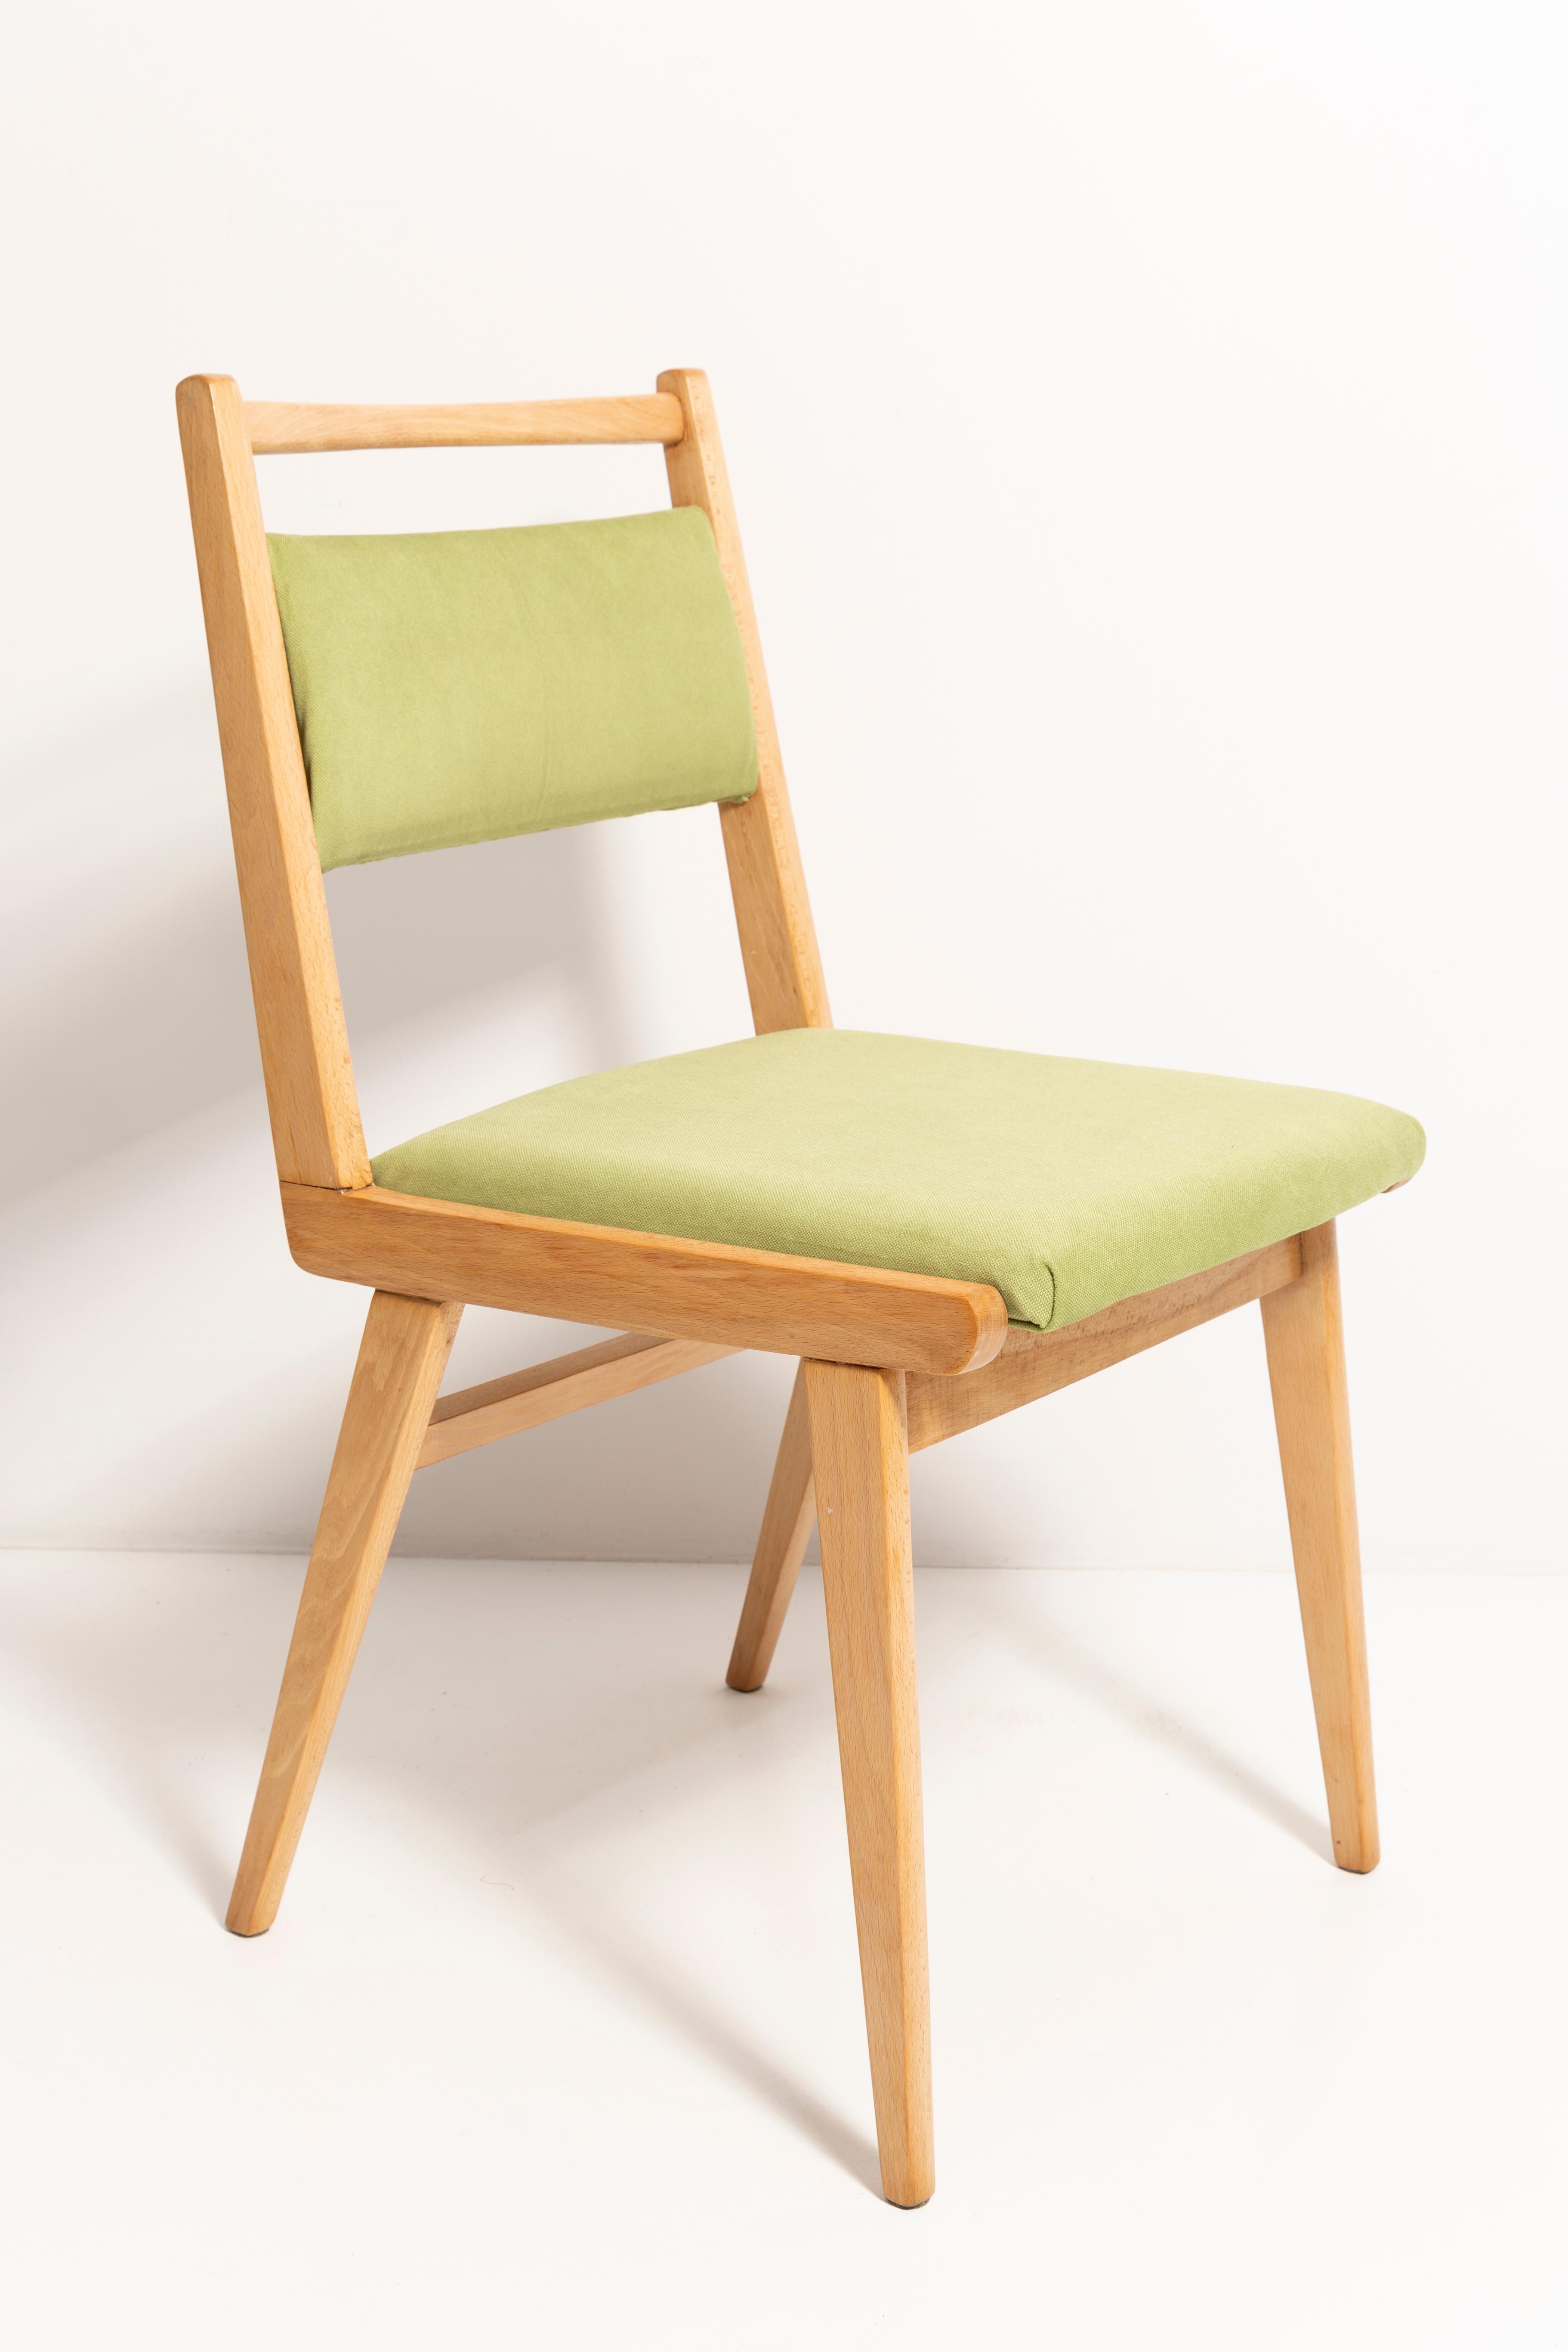 Chaises conçues par le professeur Rajmund Halas. C'est un modèle de type jar. Fabriqué en bois de hêtre. Les chaises ont été entièrement rénovées et les boiseries ont été rafraîchies. L'assise et le dossier sont habillés d'un tissu vert clair,